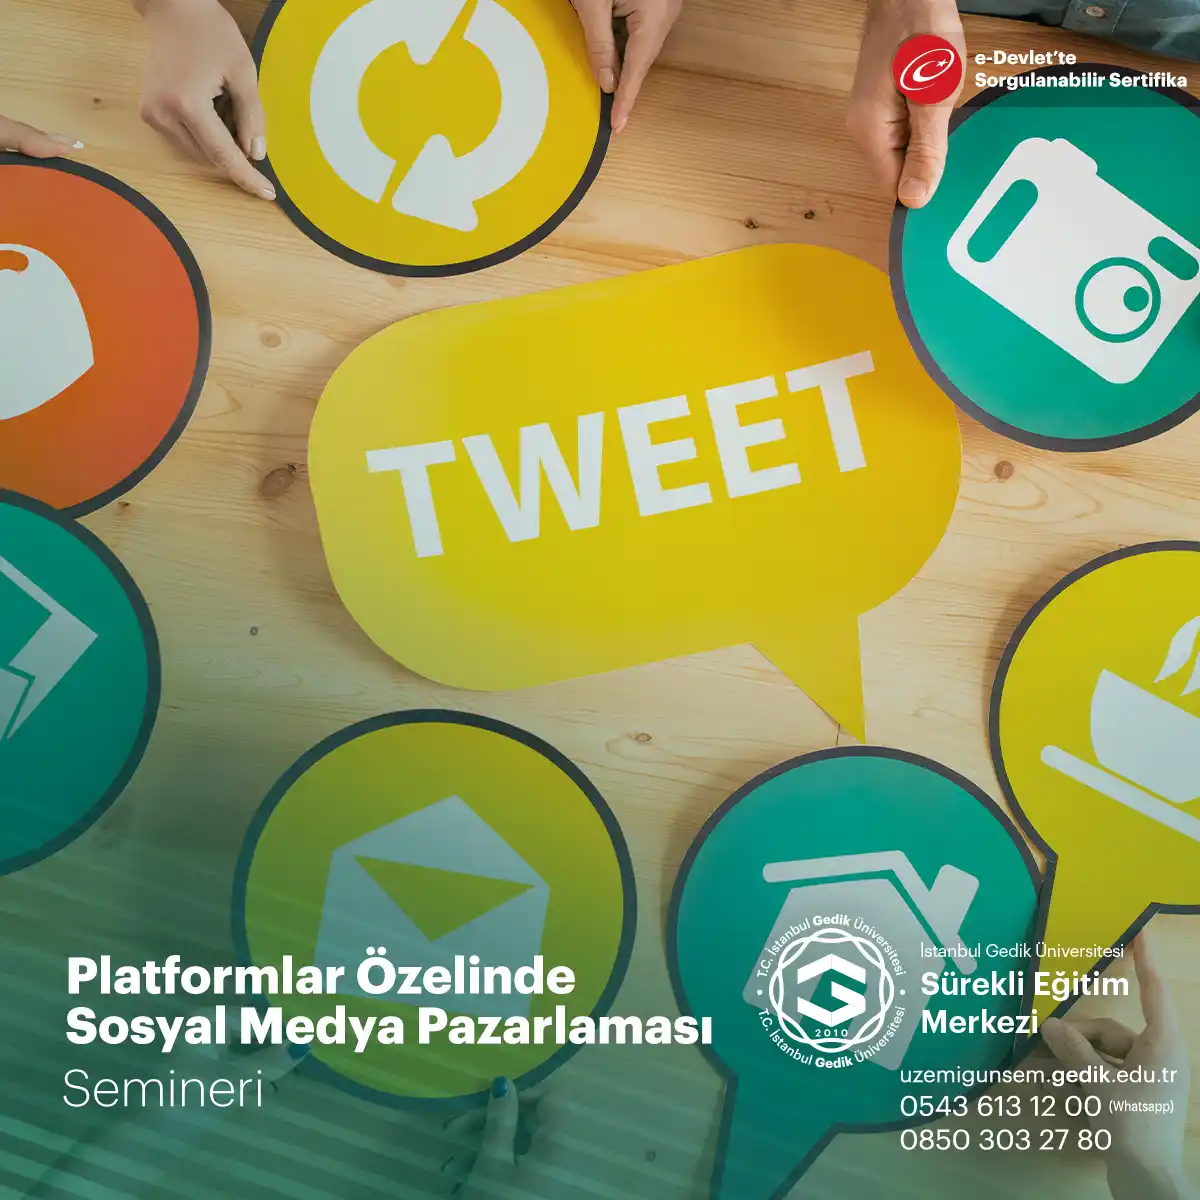 Platformlar özelinde sosyal medya pazarlaması, her bir sosyal medya platformunun benzersiz özelliklerini ifade eder.